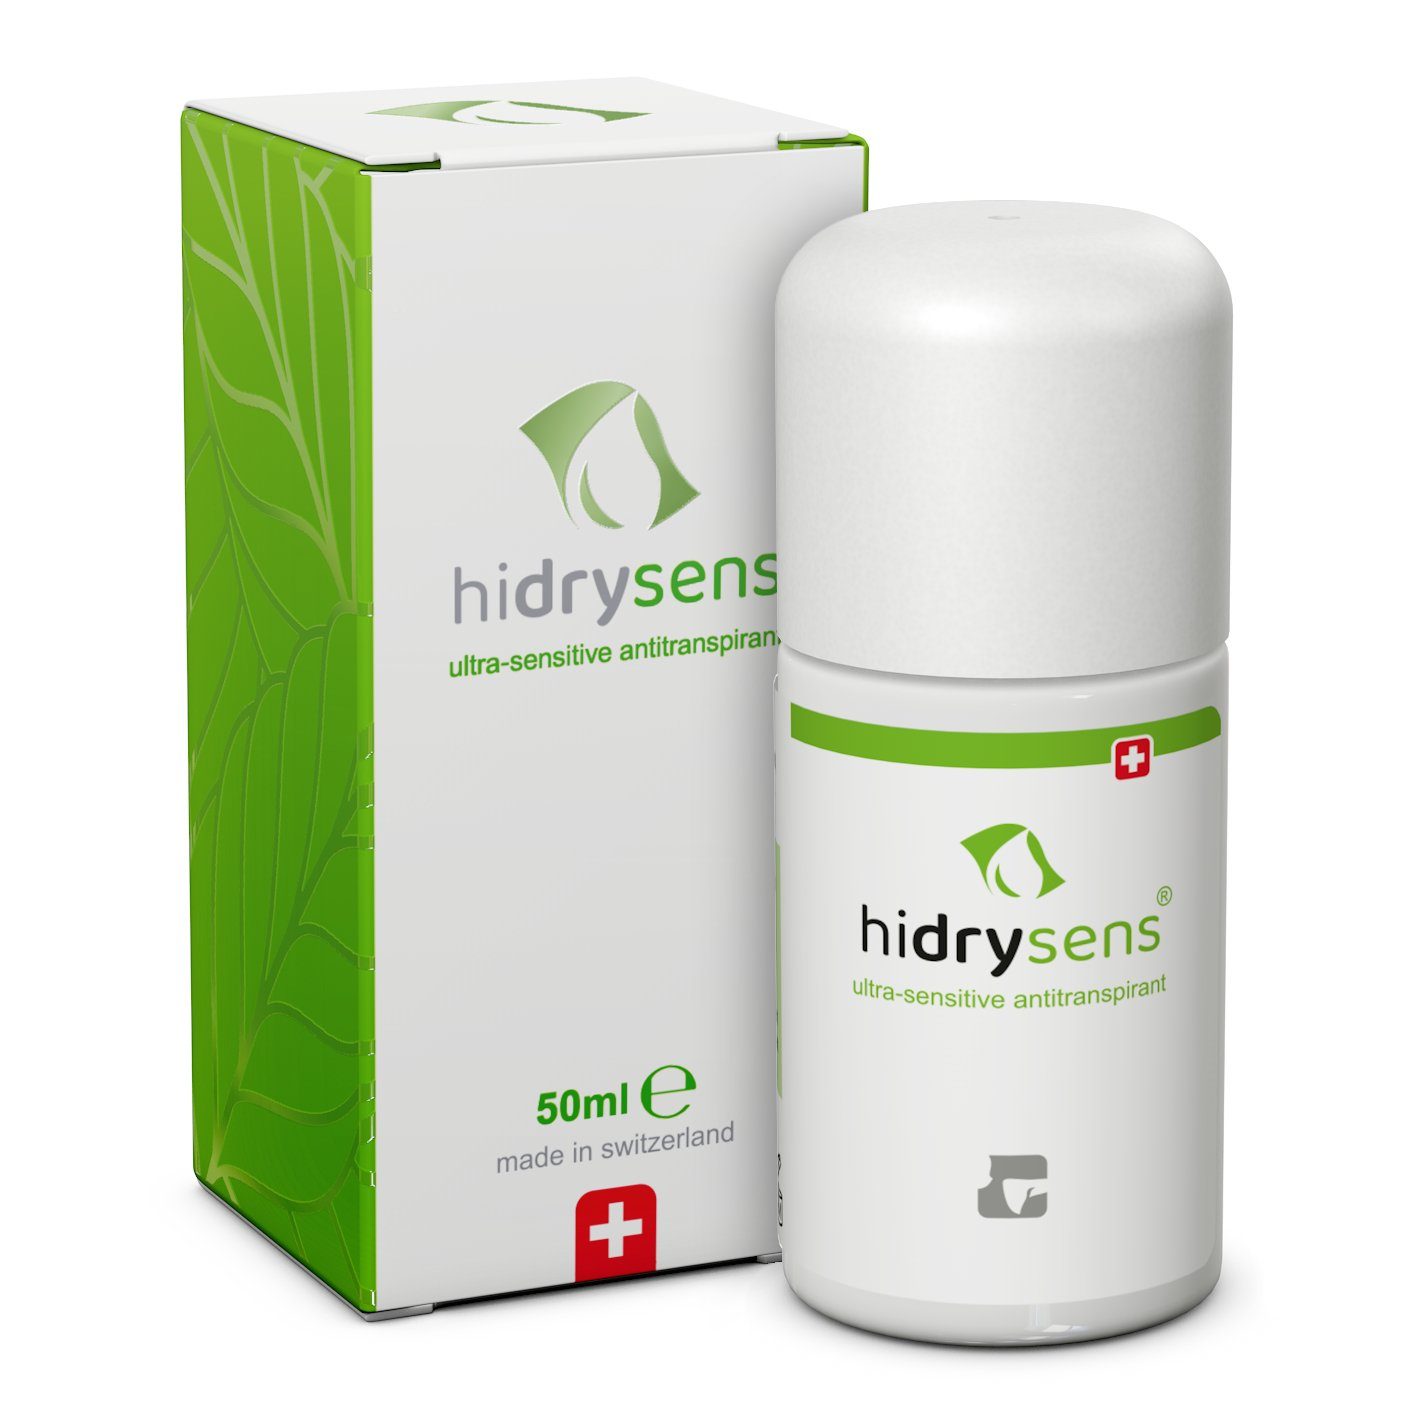 hidry Deo-Creme hidry®sens Antitranspirant 50 ml, flüssig, schweißhemmend, geruchsreduzierend